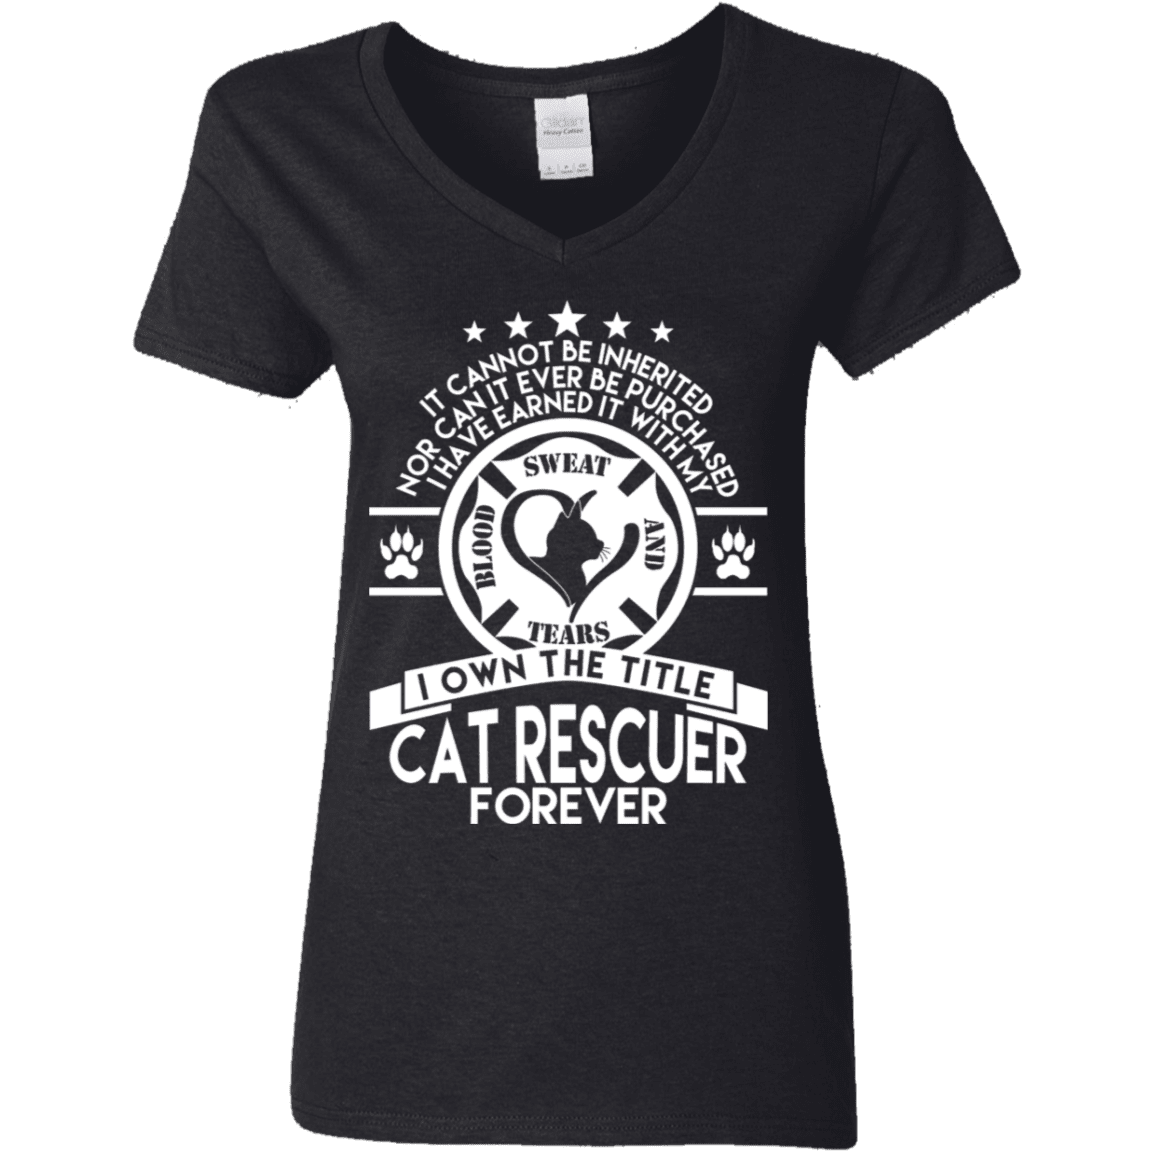 Cat Rescuer Forever - Ladies V Neck.